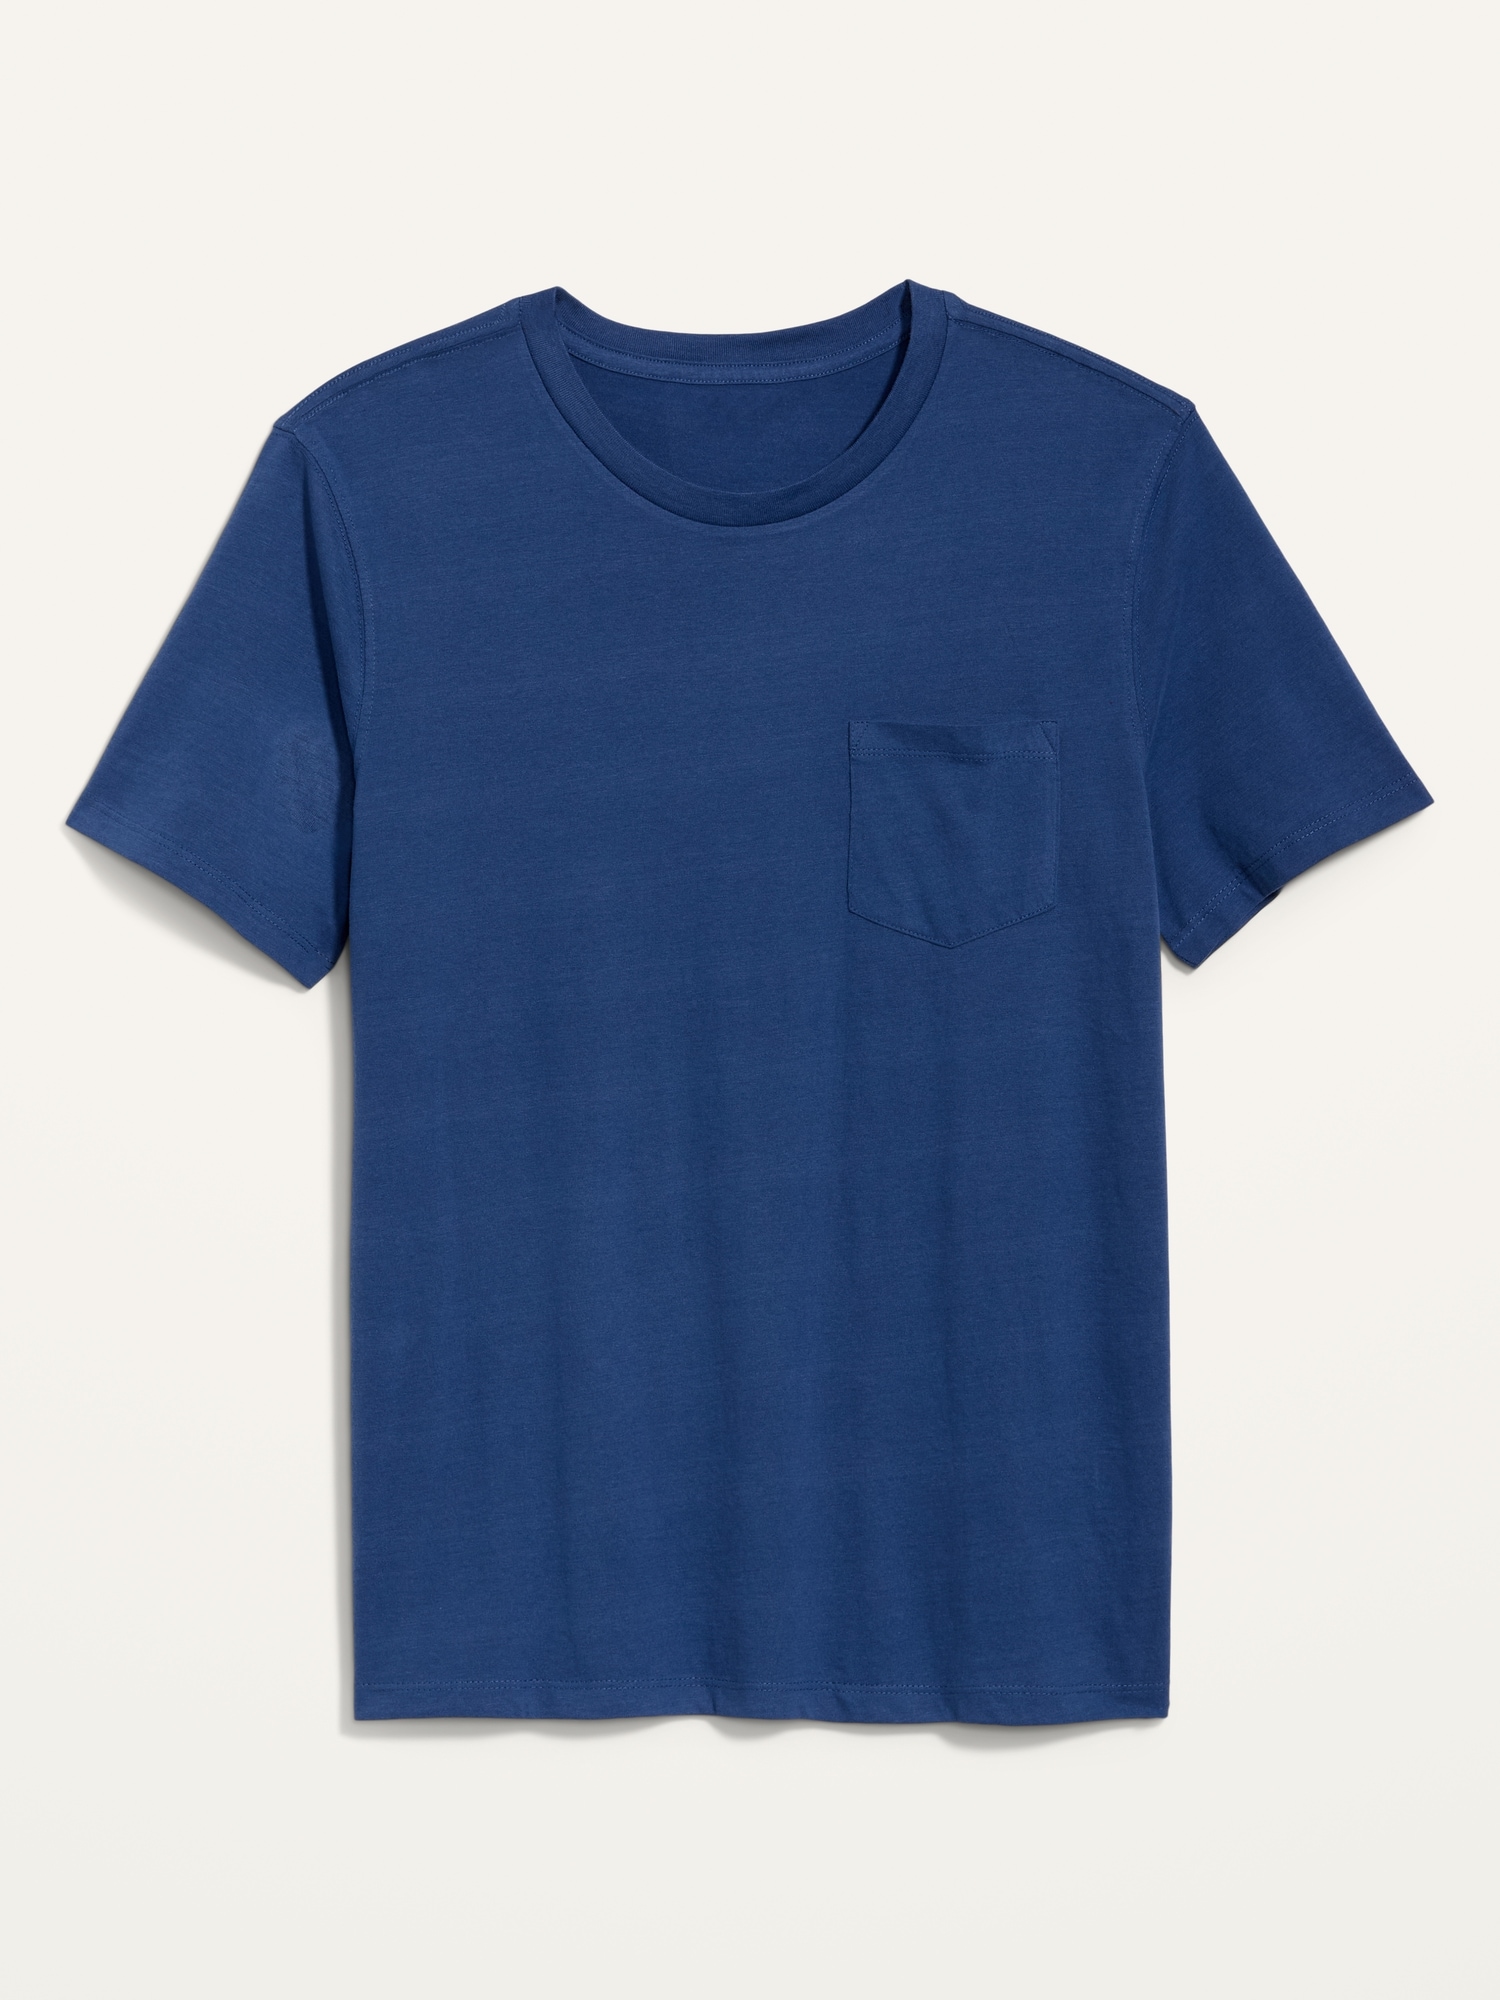 Old Navy Men's Soft-Washed Chest-Pocket T-Shirt